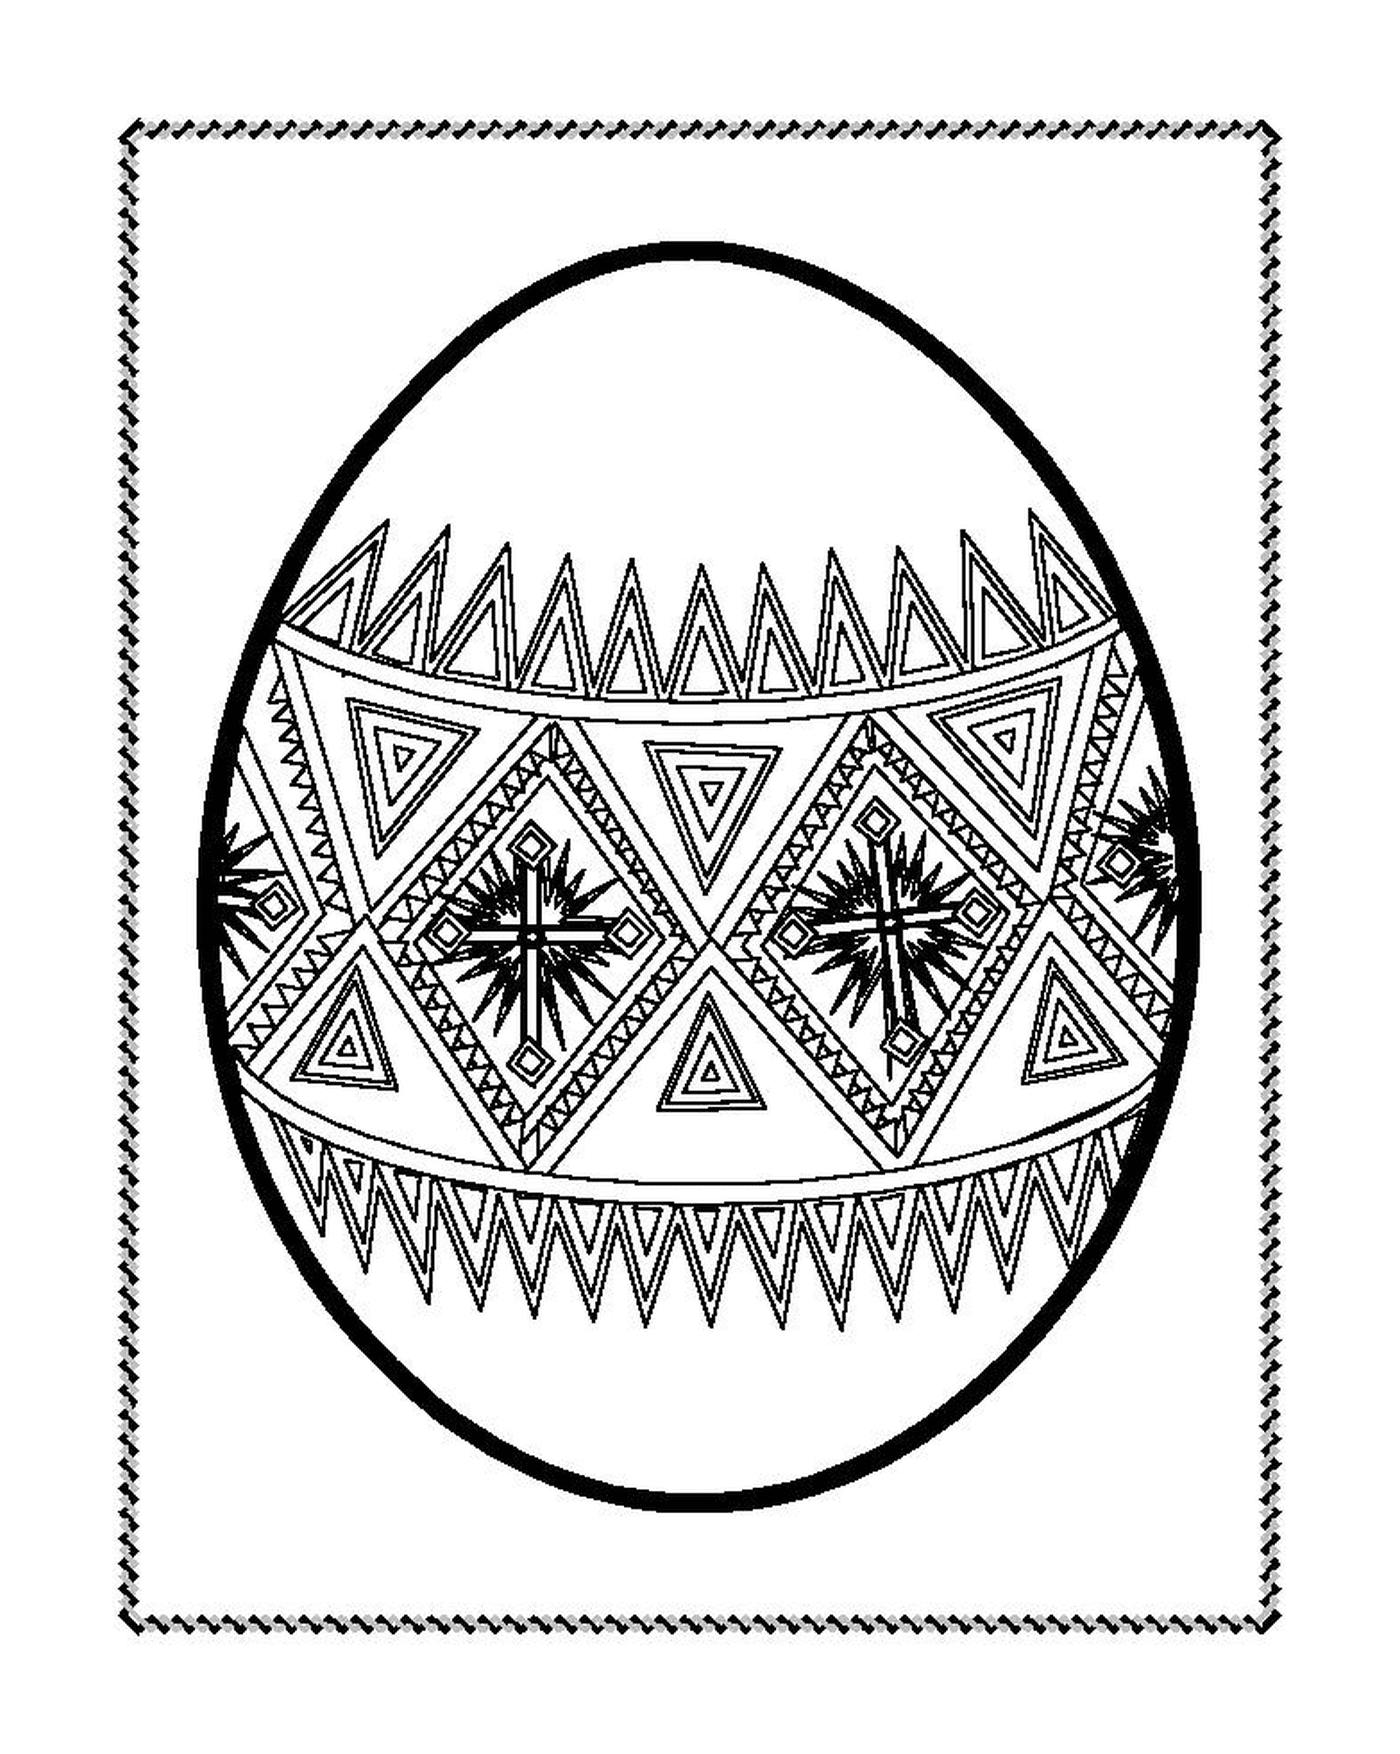   Un œuf de Pâques décoré de motifs géométriques 